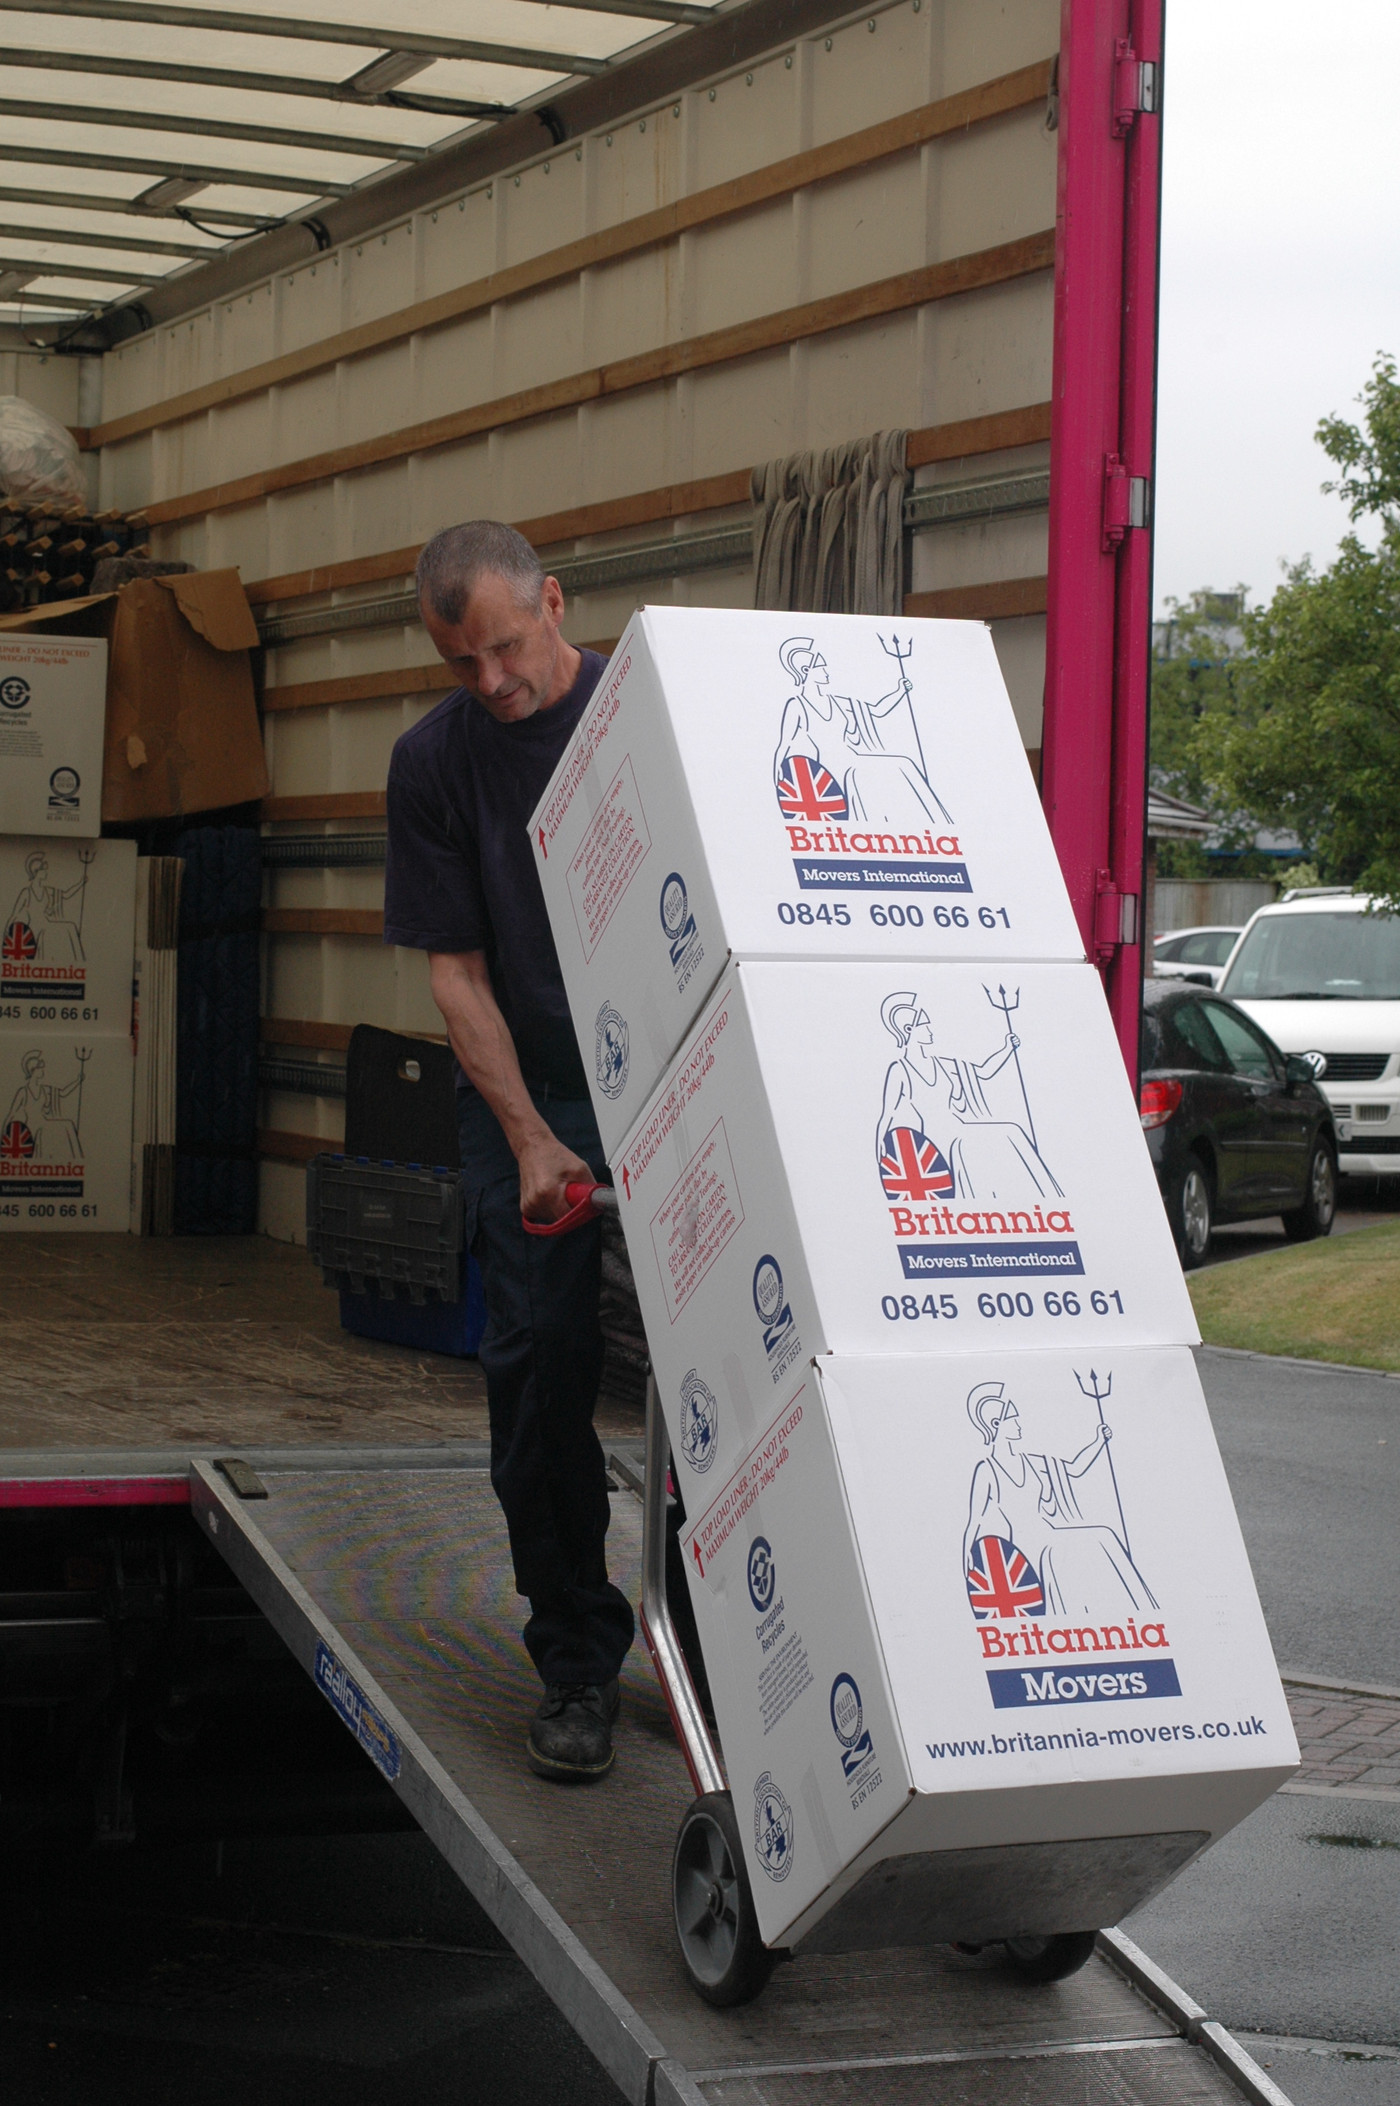 Loading cartons Moving Flat Pack Furniture Britannia Bradshaws